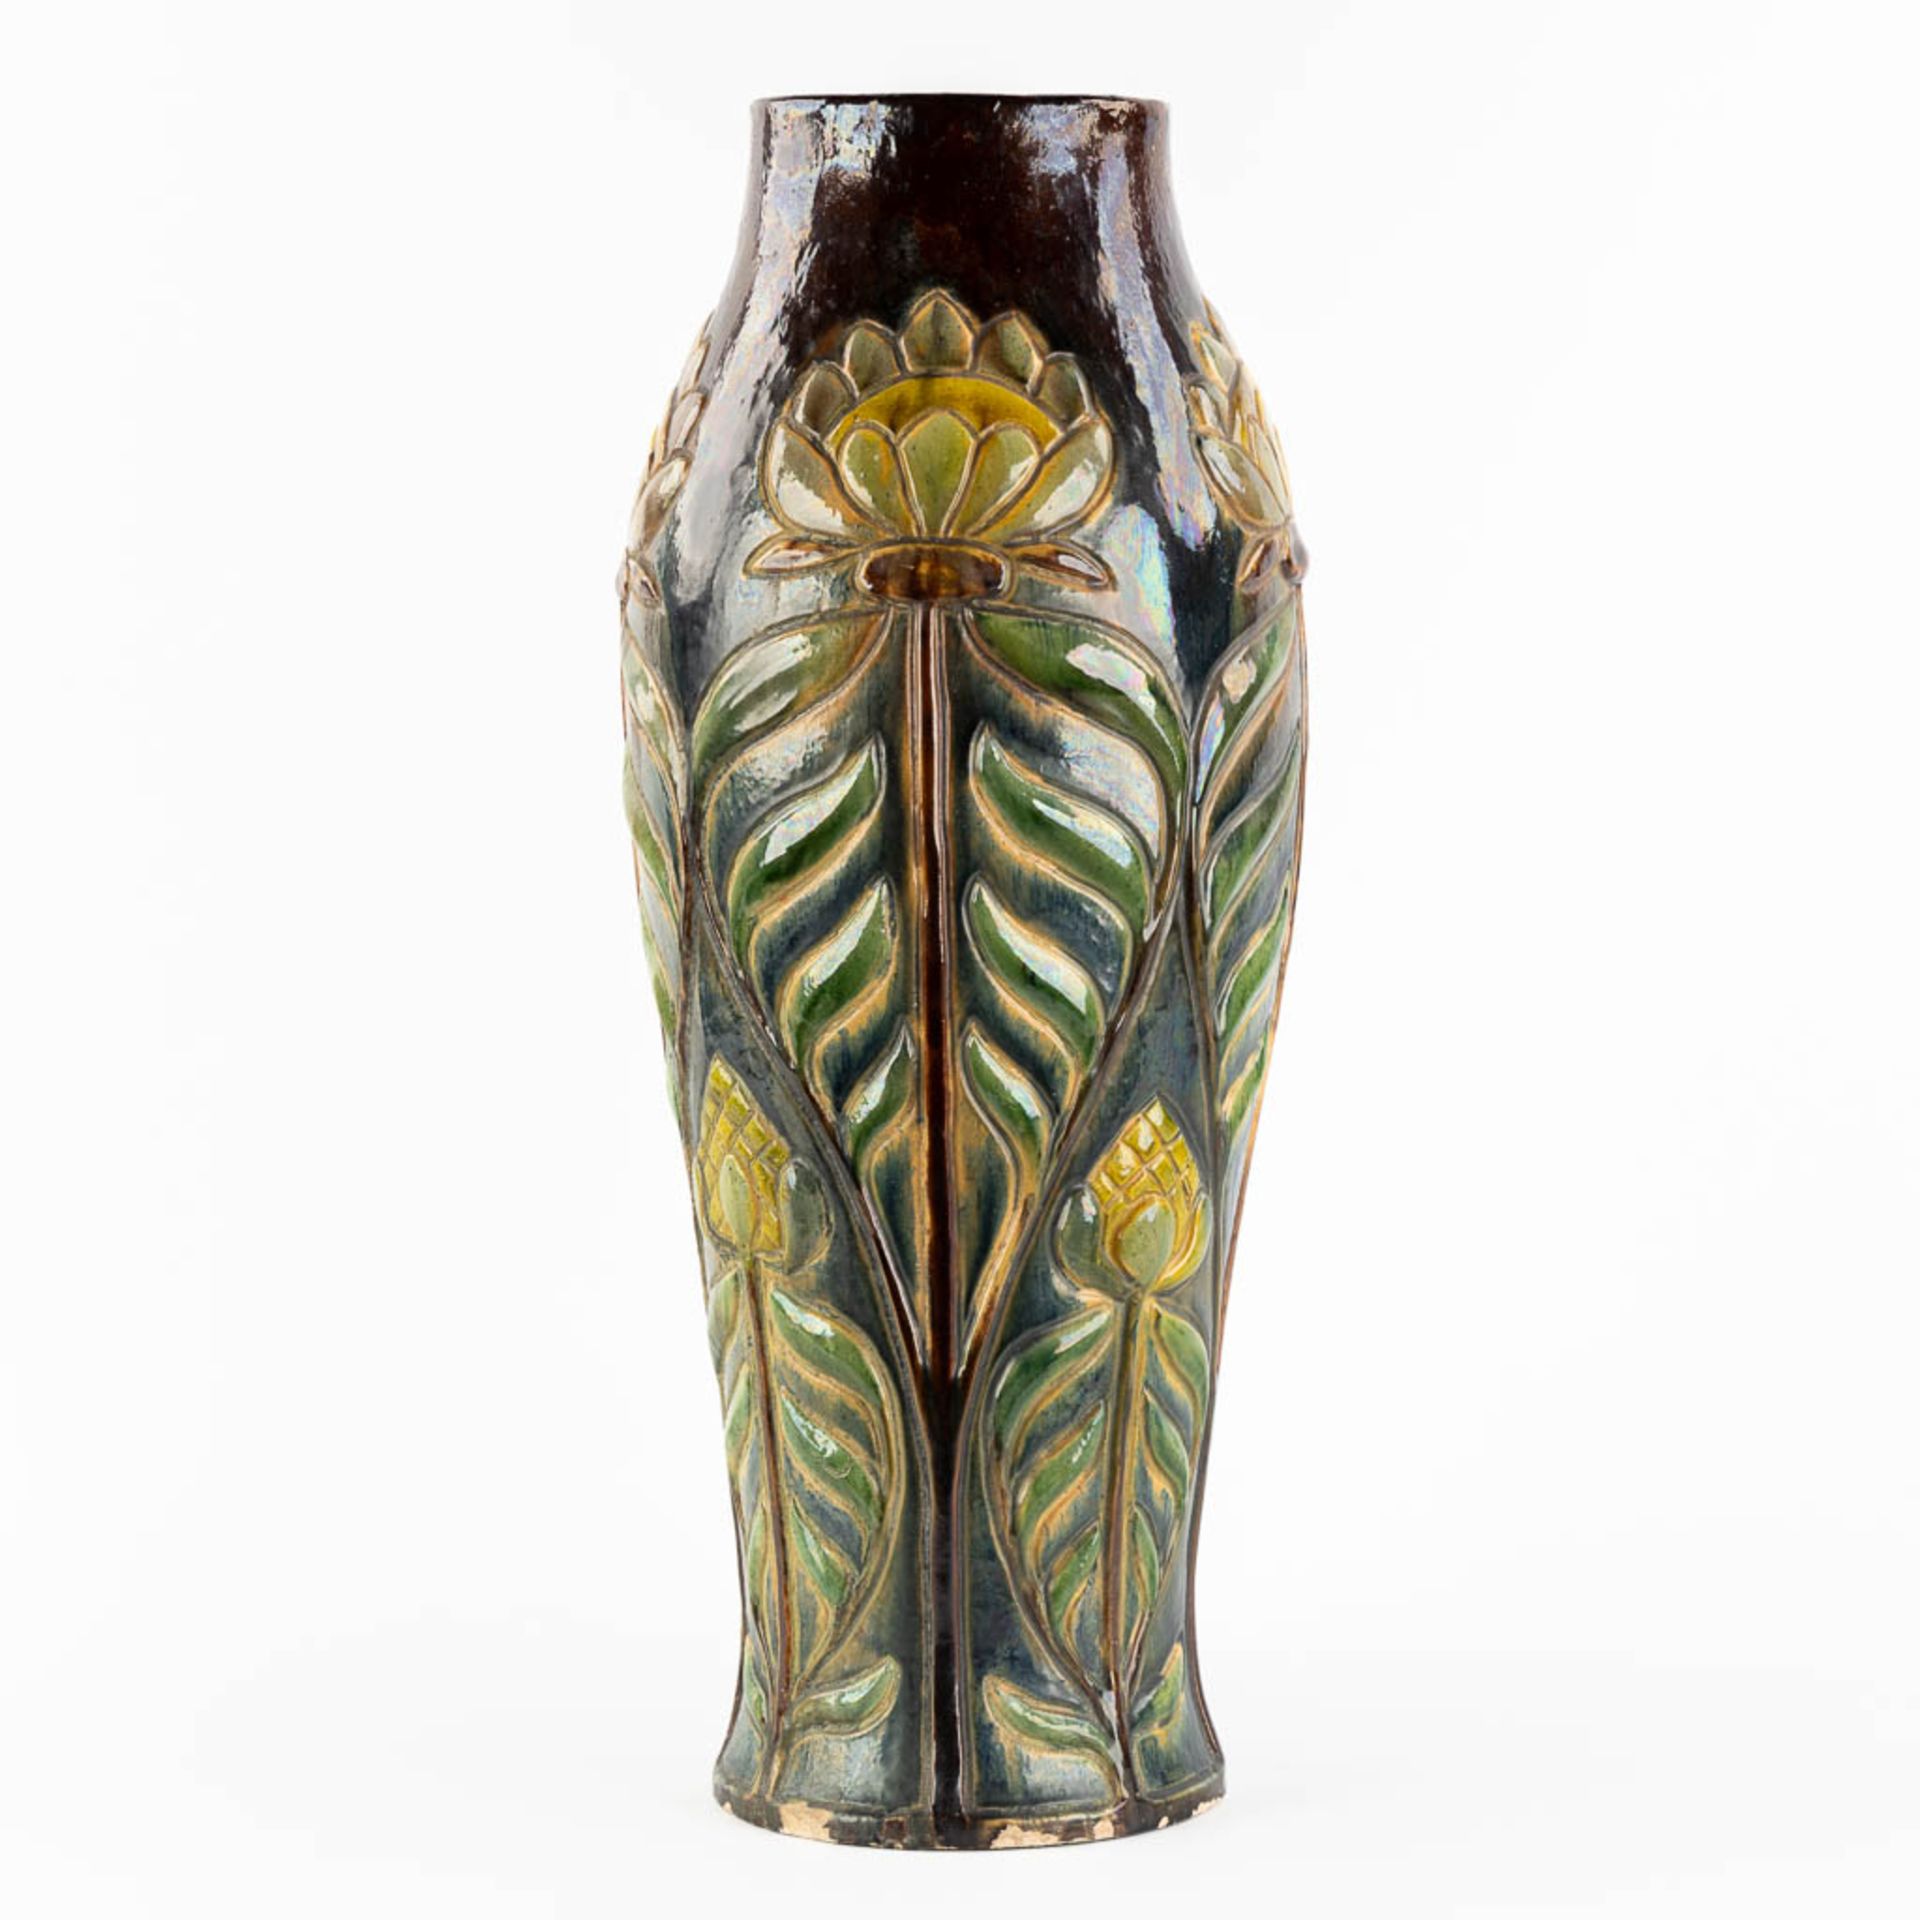 Flemish Earthenware, a large vase, Art Nouveau. (H:61,5 x D:22 cm) - Image 3 of 11